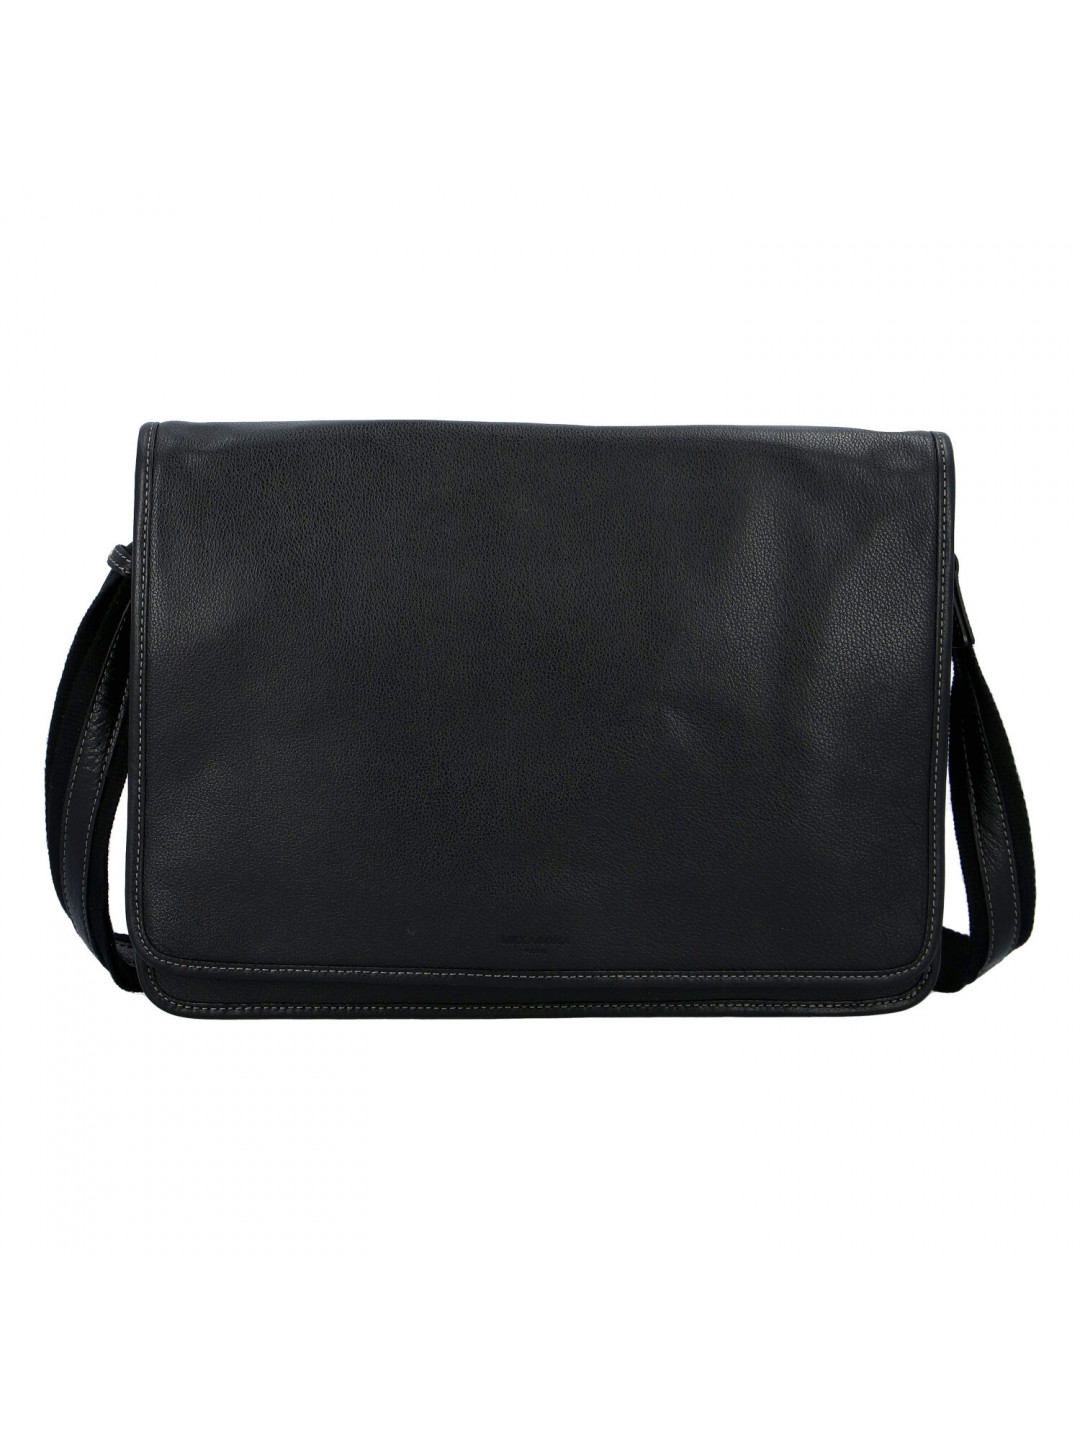 Pánská kožená taška přes rameno černá – Hexagona 463136